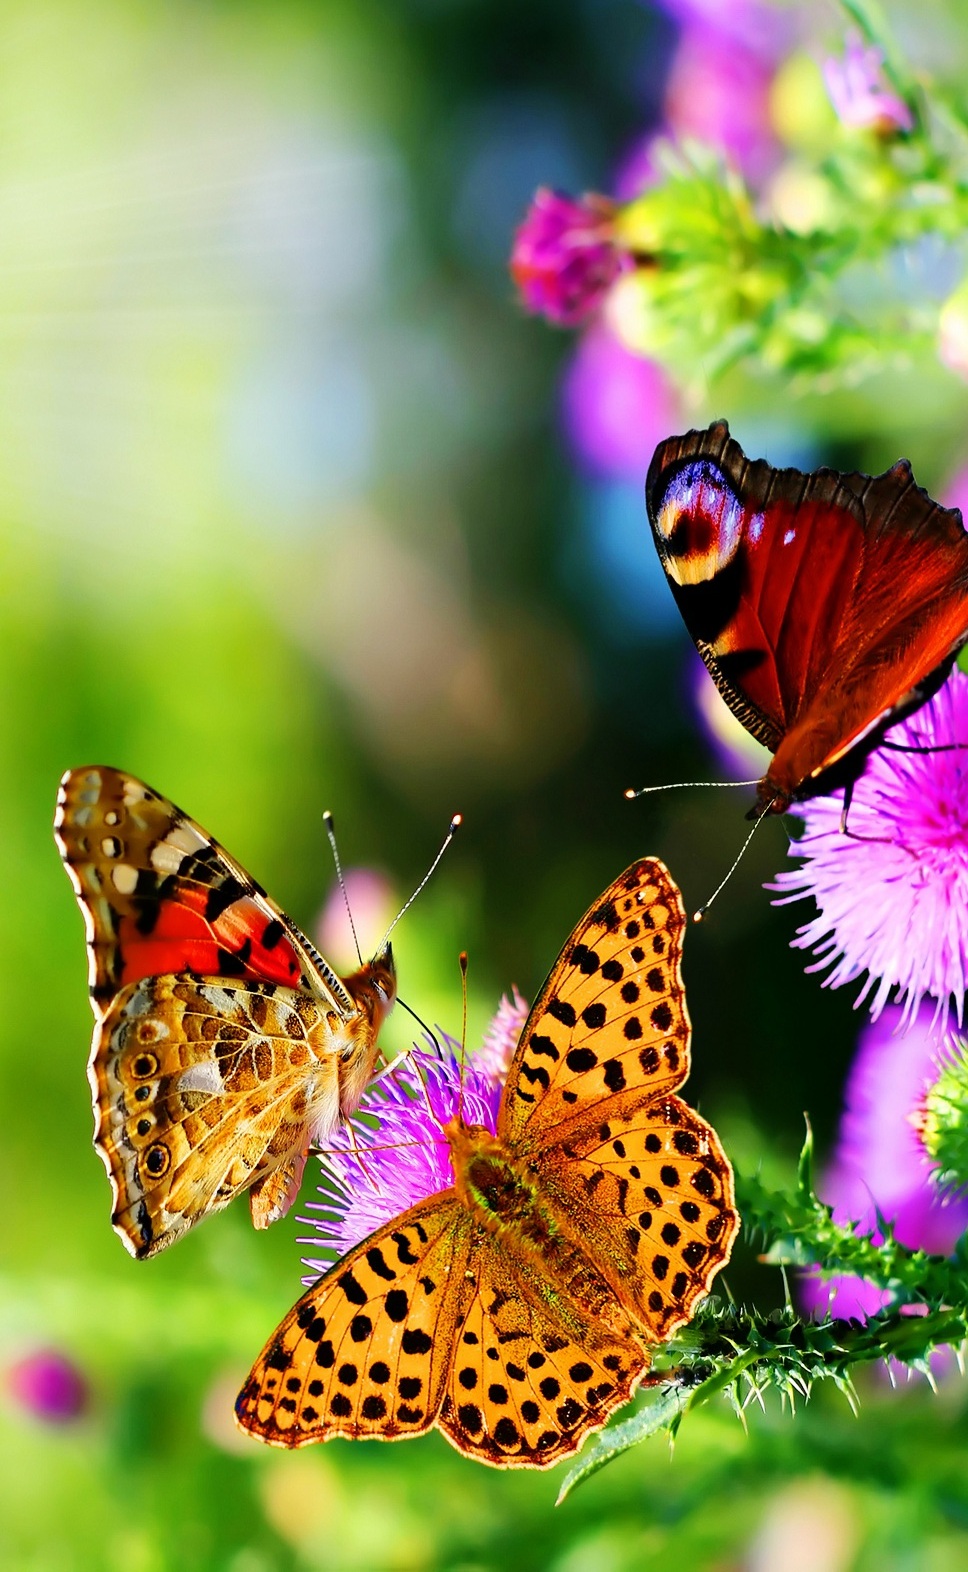 Best Butterflies iPhone Wallpaper resolution 968x1572